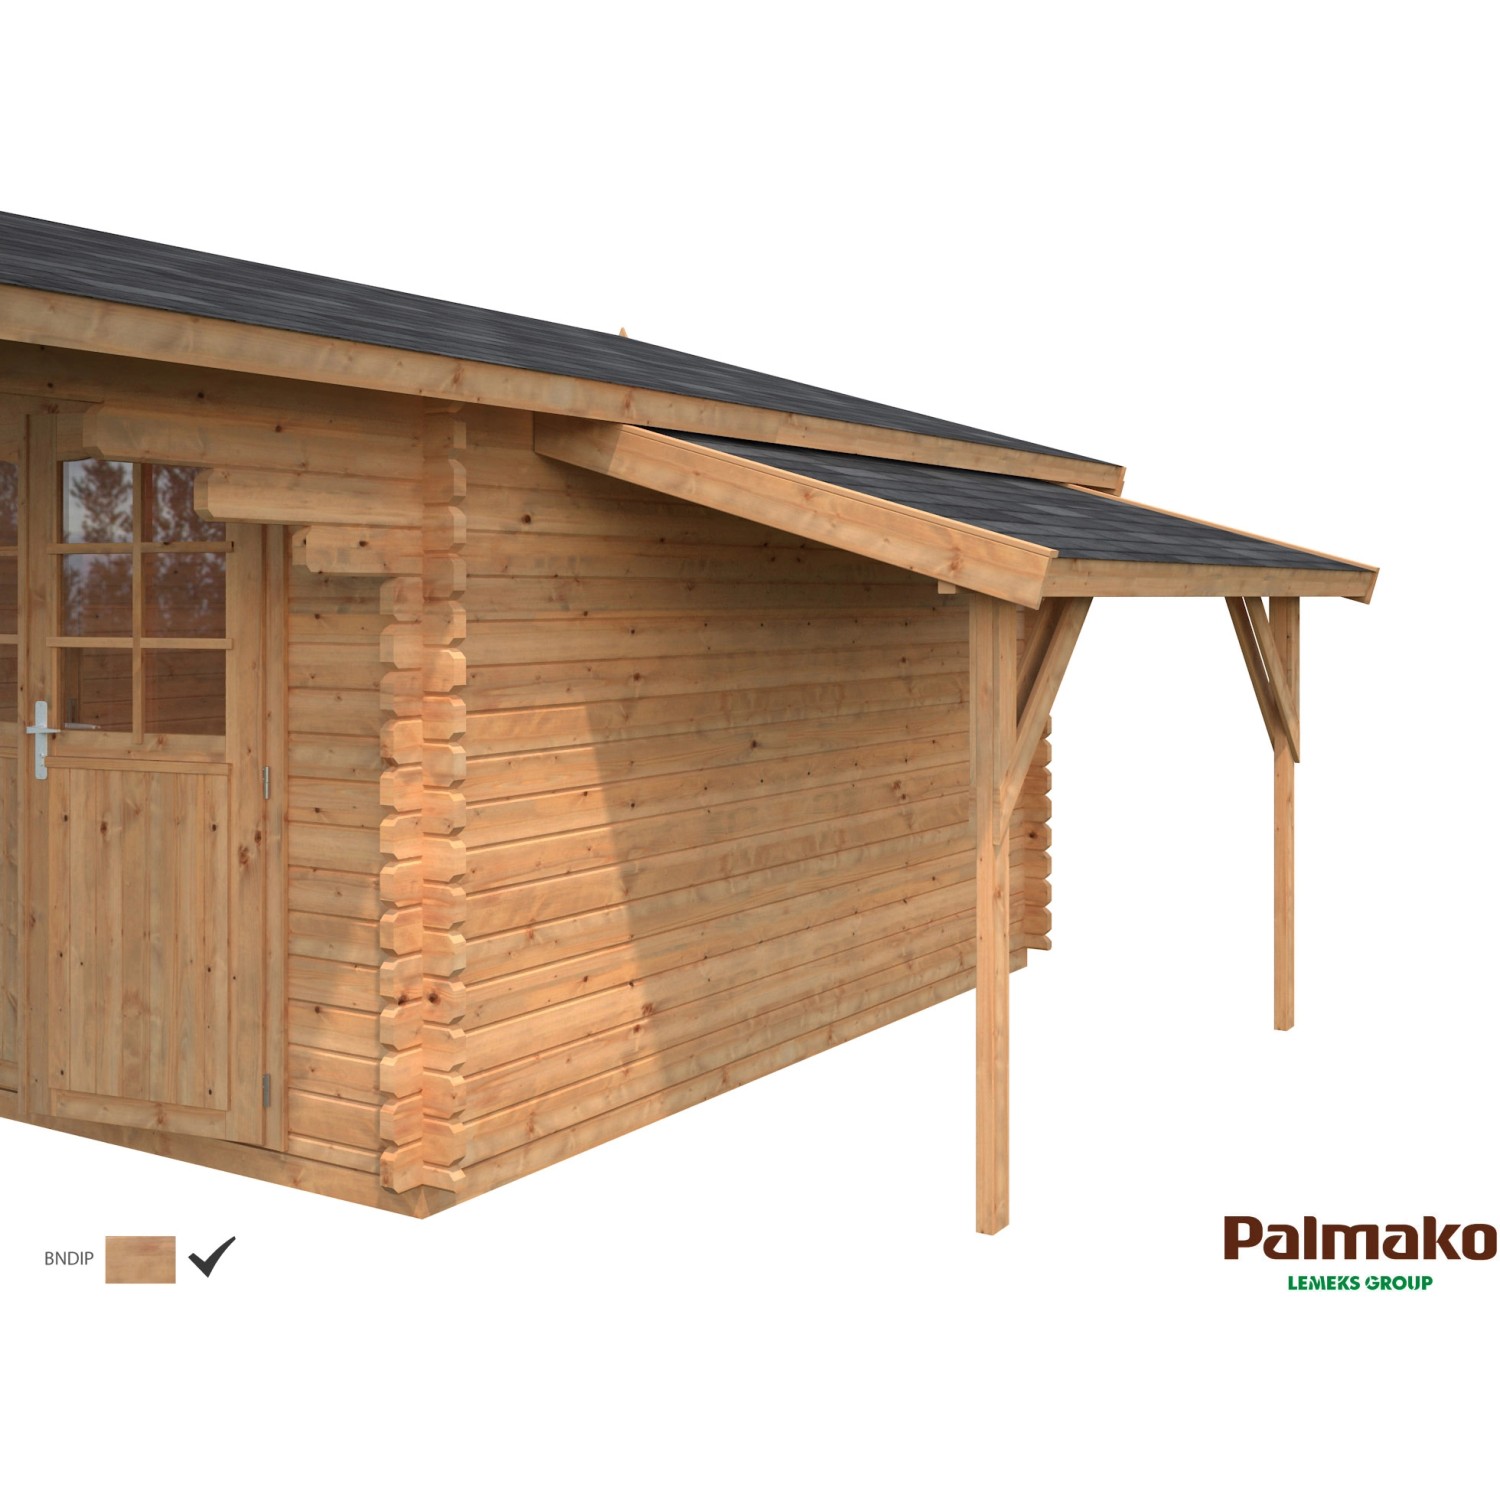 Palmako Schleppdach für Holz-Gartenhäuser Braun tauchgrundiert 144 cm x 290 cm von Palmako